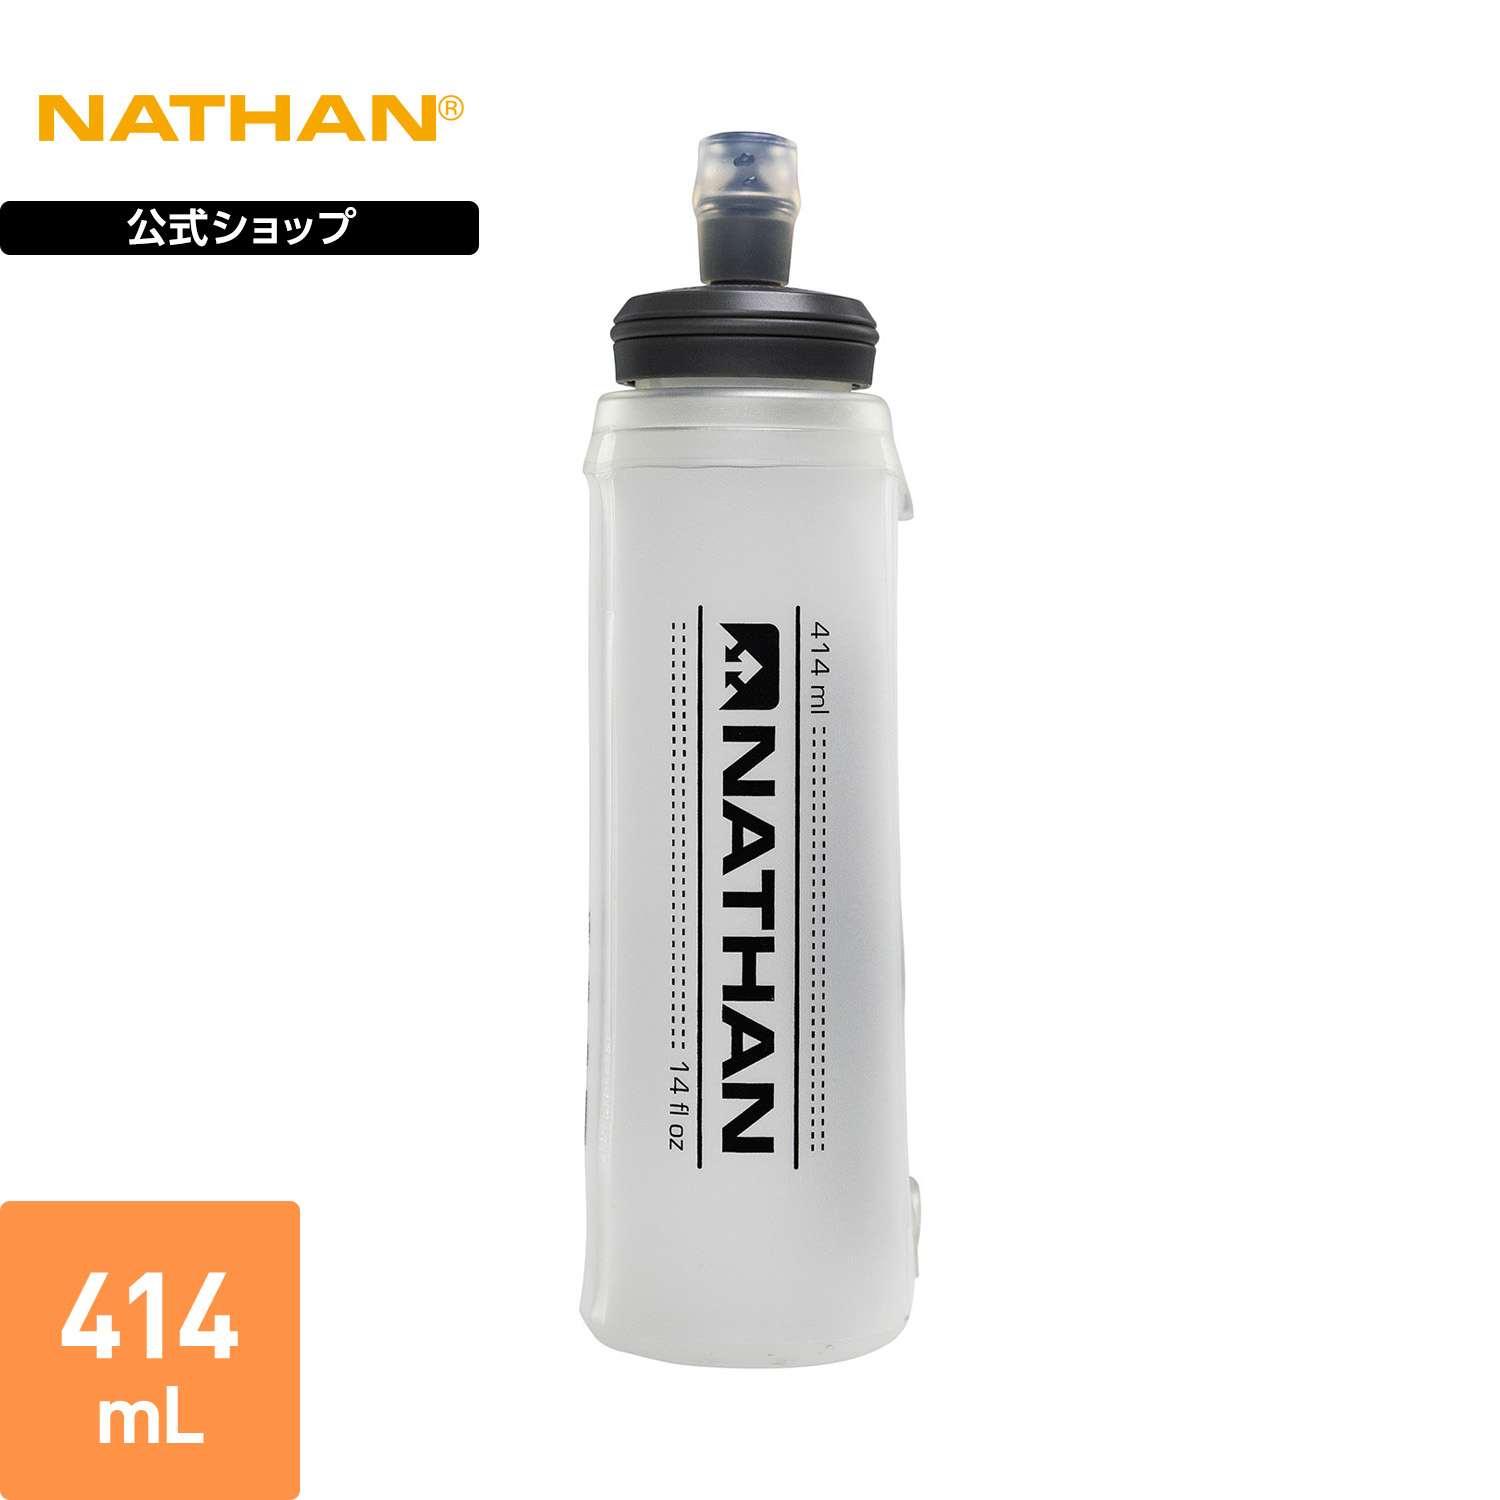 【公式】 NATHAN ( ネイサン ) イグソショットソフトフラスク 2.0 1個入り 414ml 冷凍可 クリア NS4012